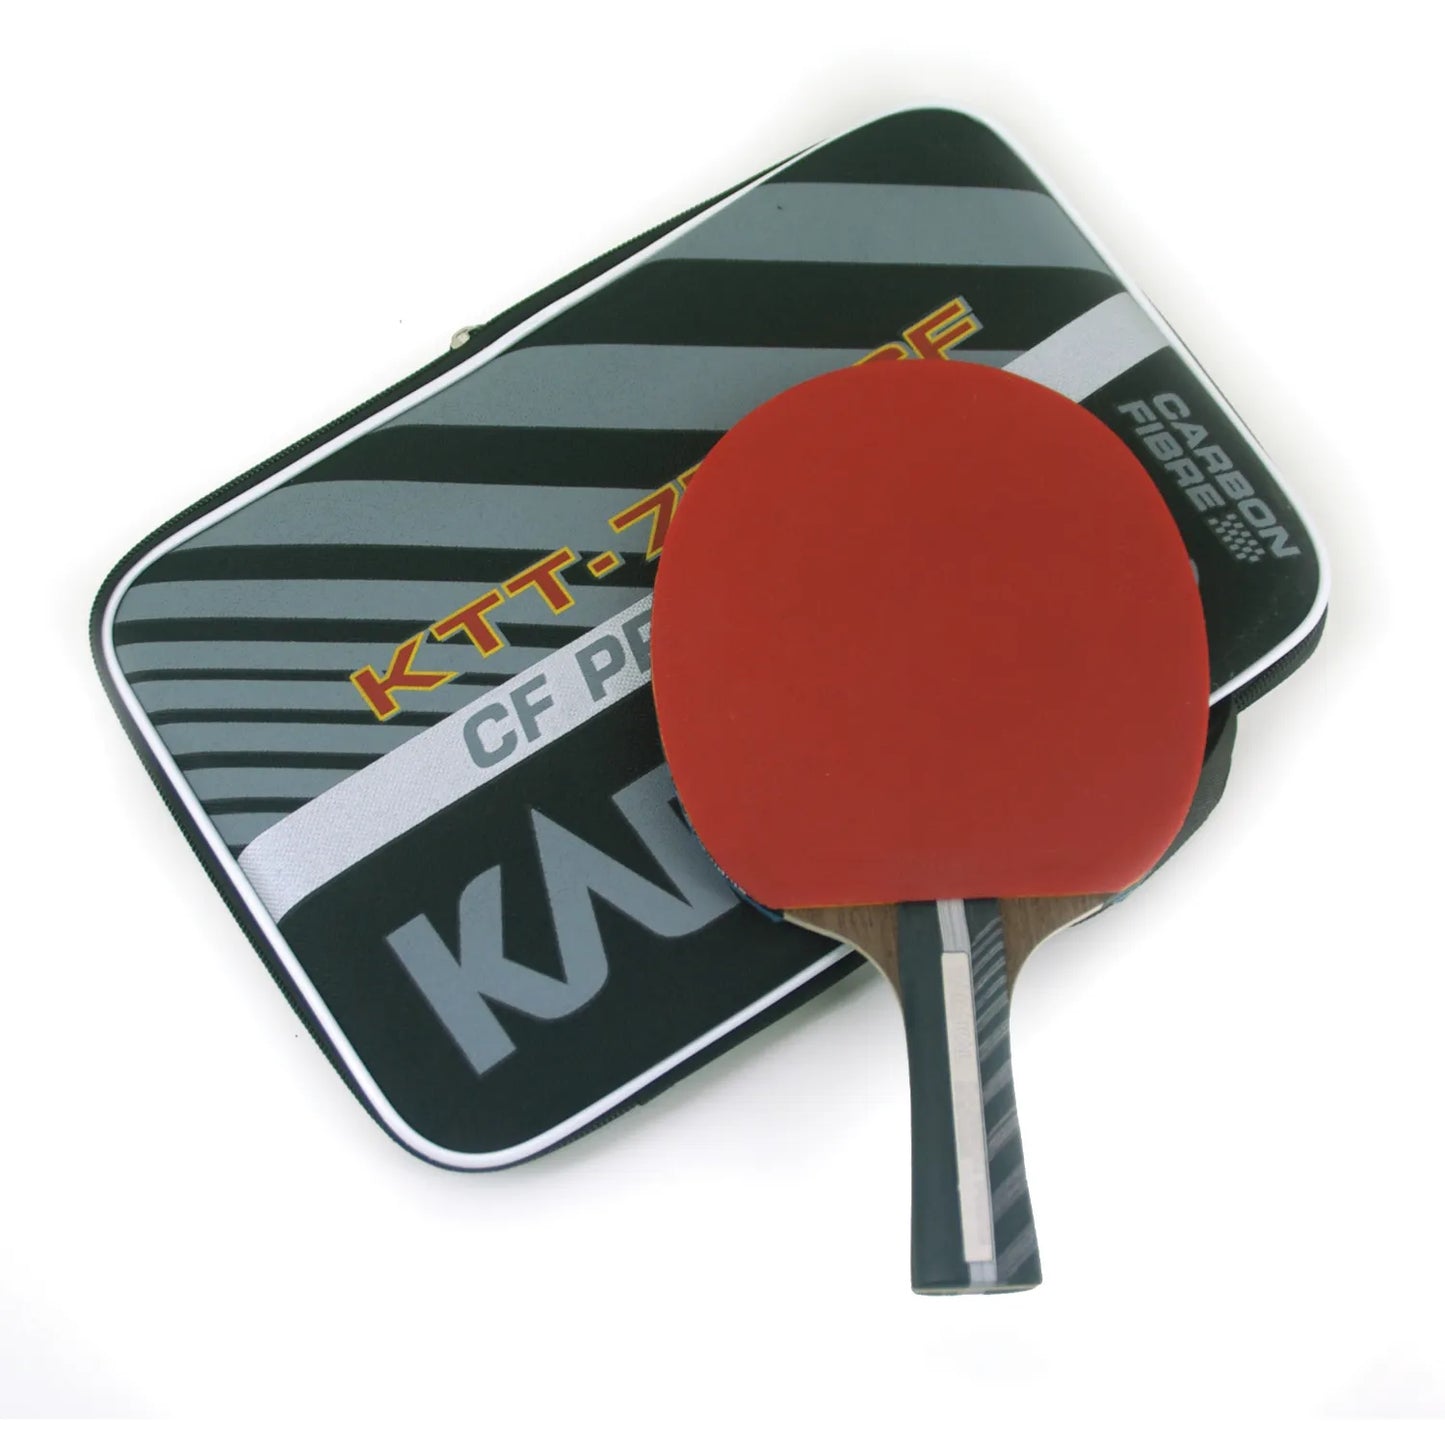 Karakal KTT 750 Carbon Fibre Table Tennis Bat